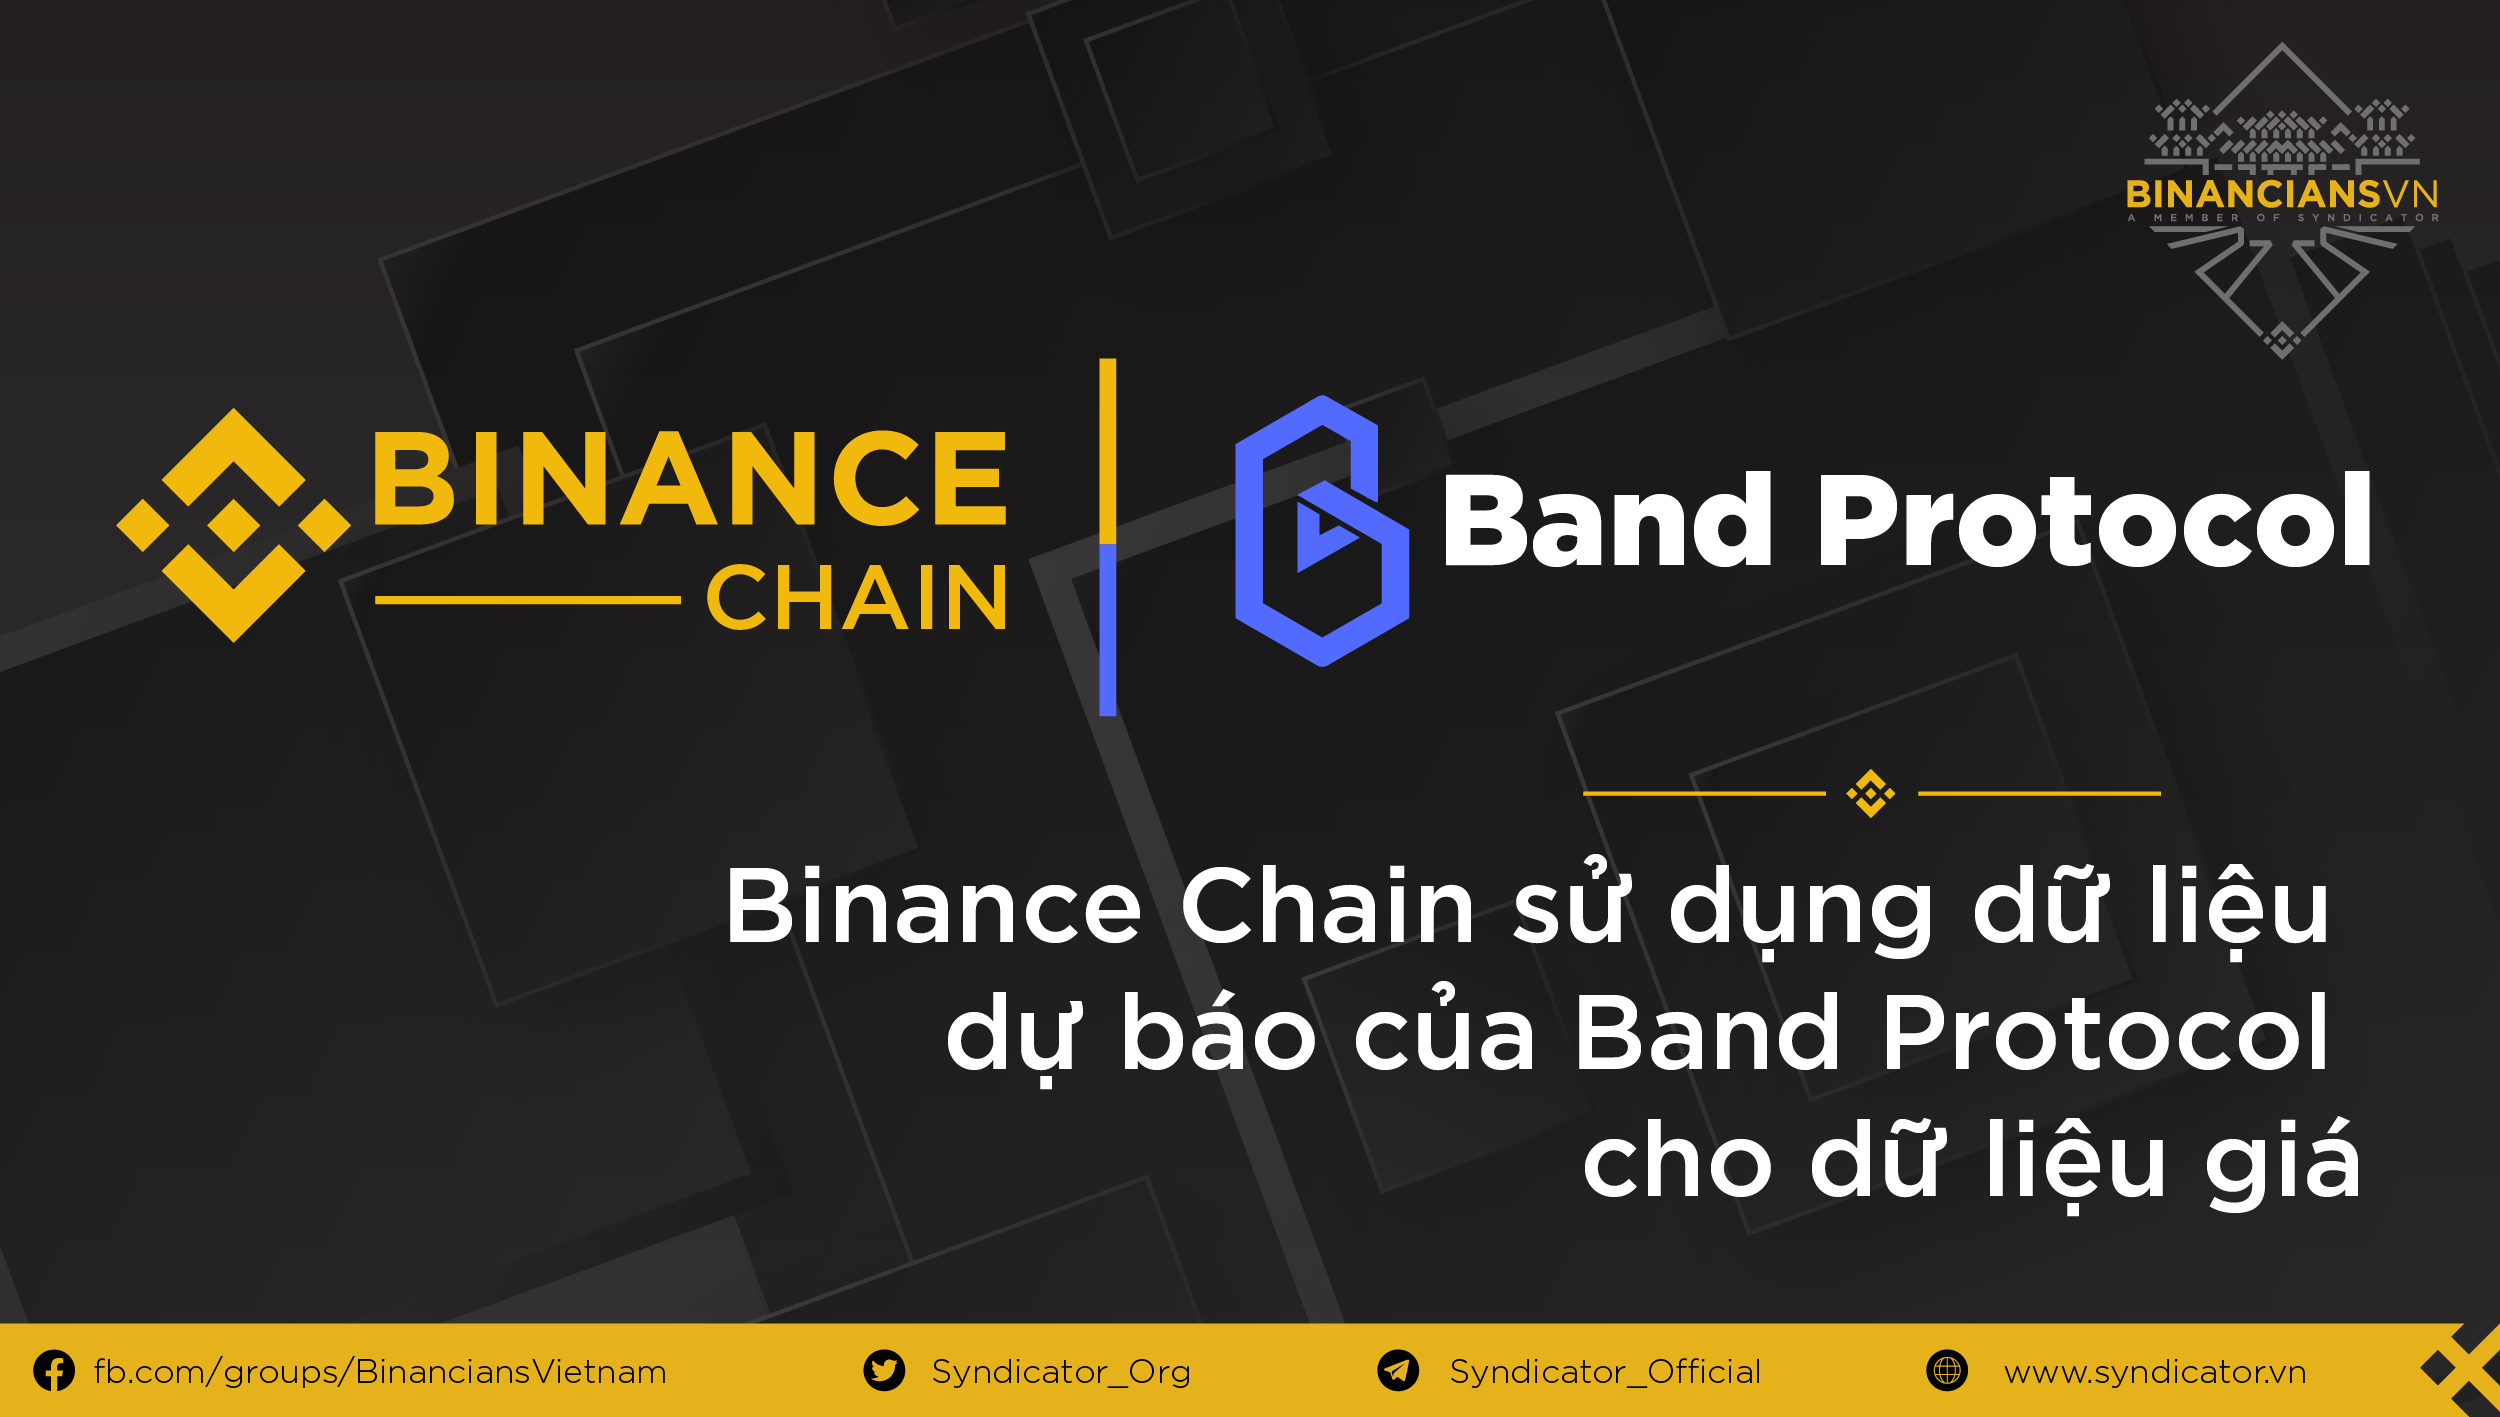 Binance Chain sử dụng dữ liệu dự bo của Band Protocol cho ...